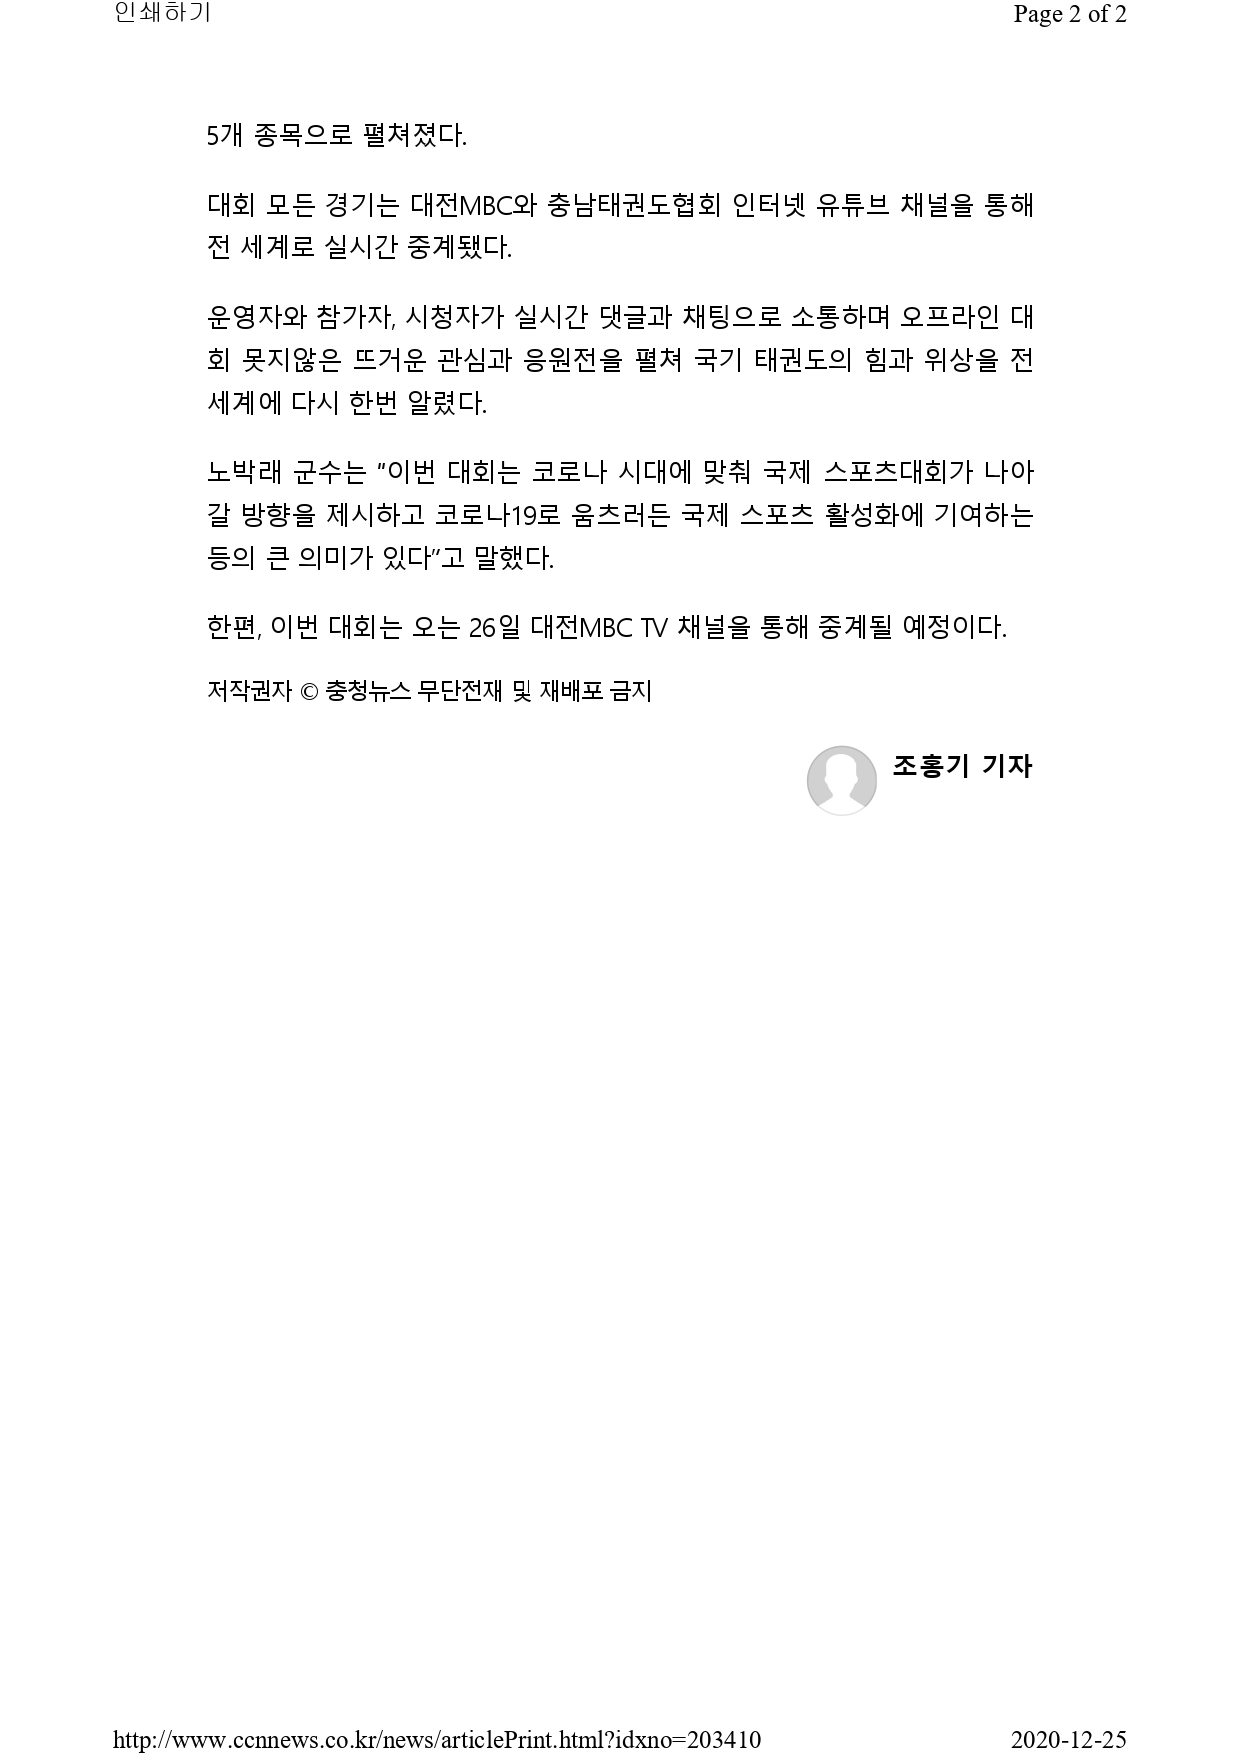 [충청뉴스] 온라인 2020 대전MBC배 국제오픈태권도대회 성료!_page-0002.jpg